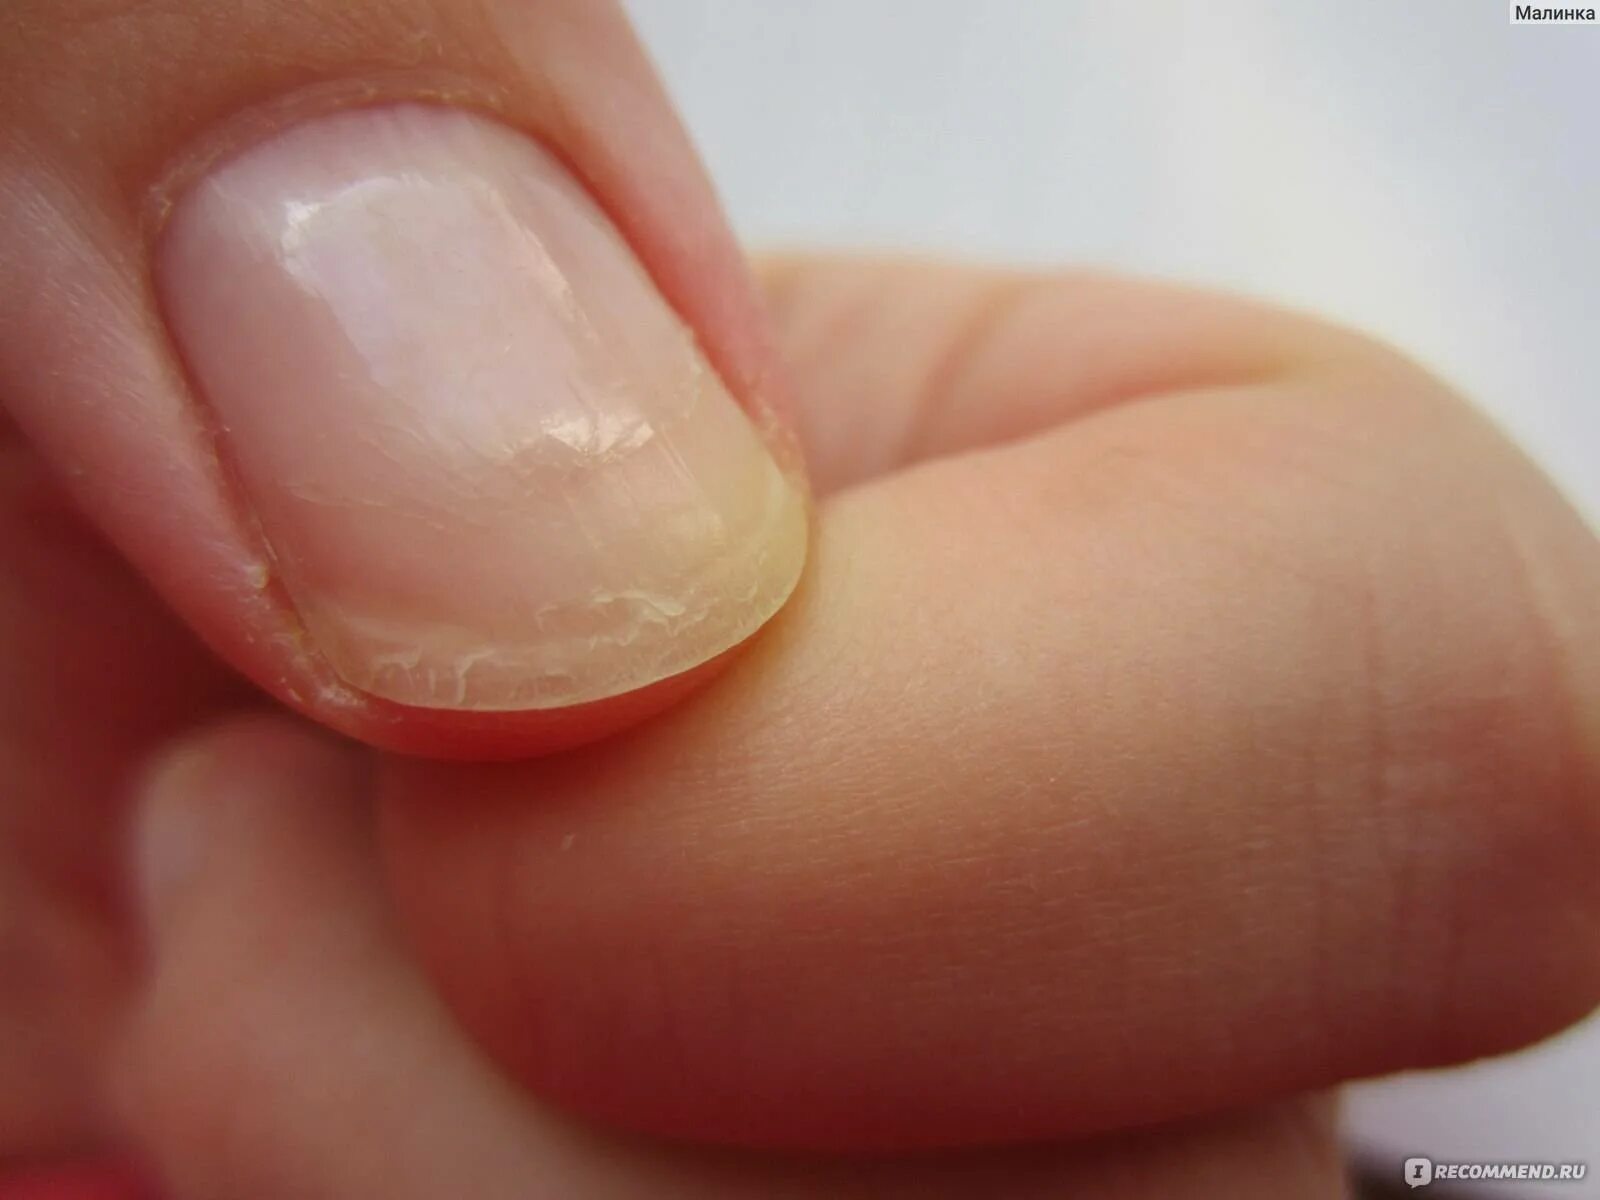 Что делать если ногти мягкие. Онихошизис ногтевой пластины.